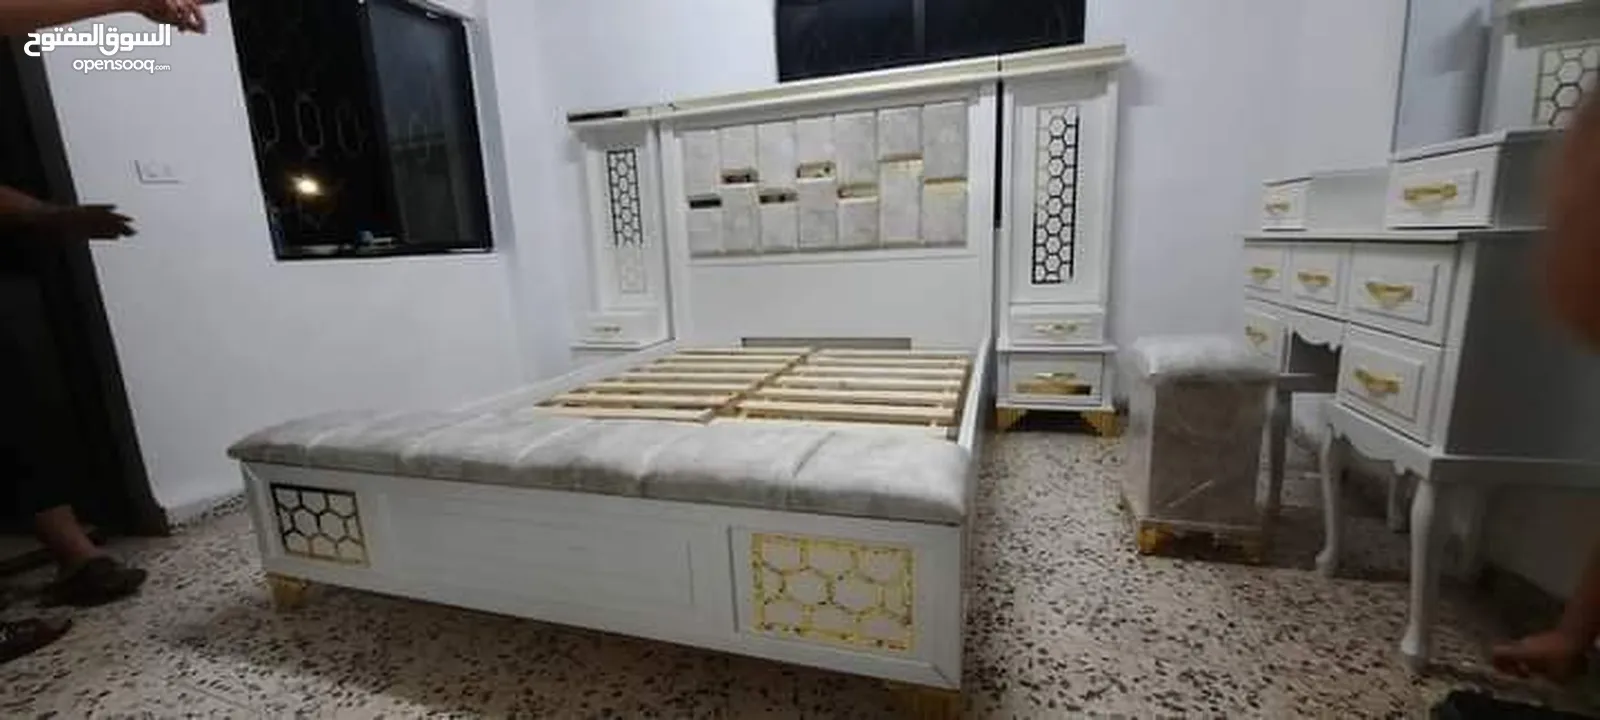 اسعار حرق لغرف النوم المودرن التركي جوده عاليه وخشب ممتاز خشب لاتيه 18 ودهان ميتلك تركي